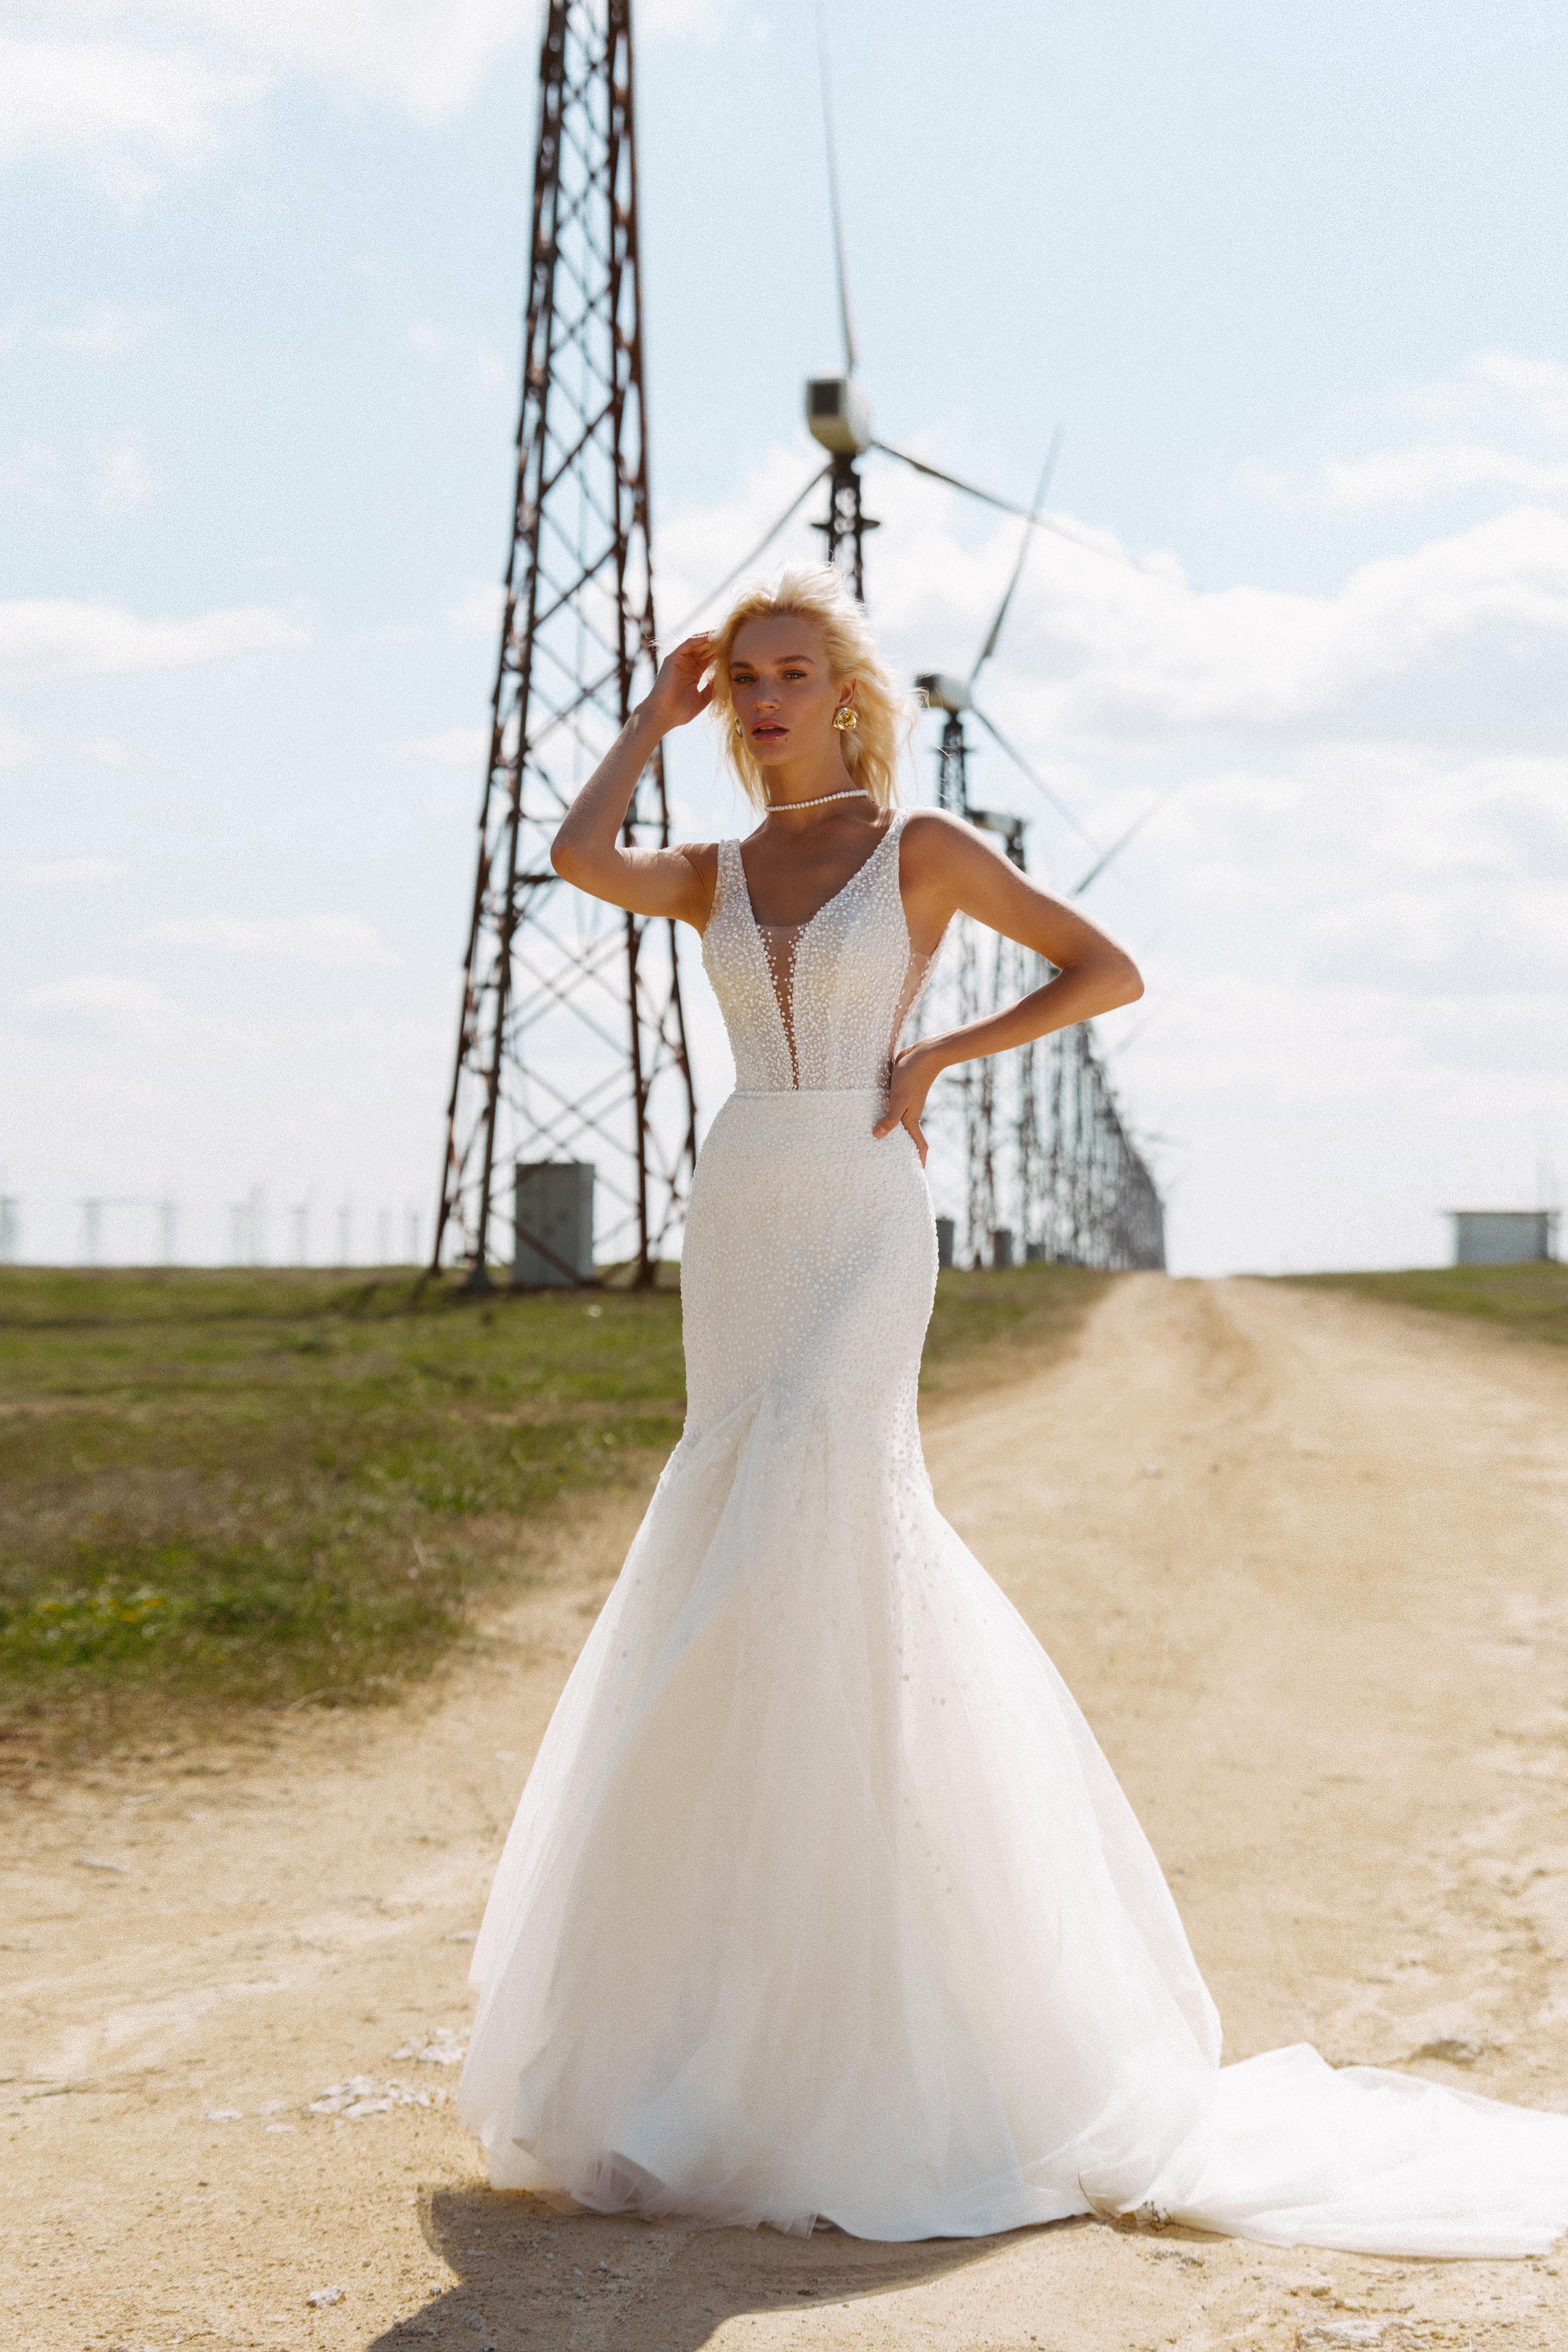 Купить свадебное платье «Юджин» Наталья Романова из коллекции Блаш 2022 года в салоне «Мэри Трюфель»